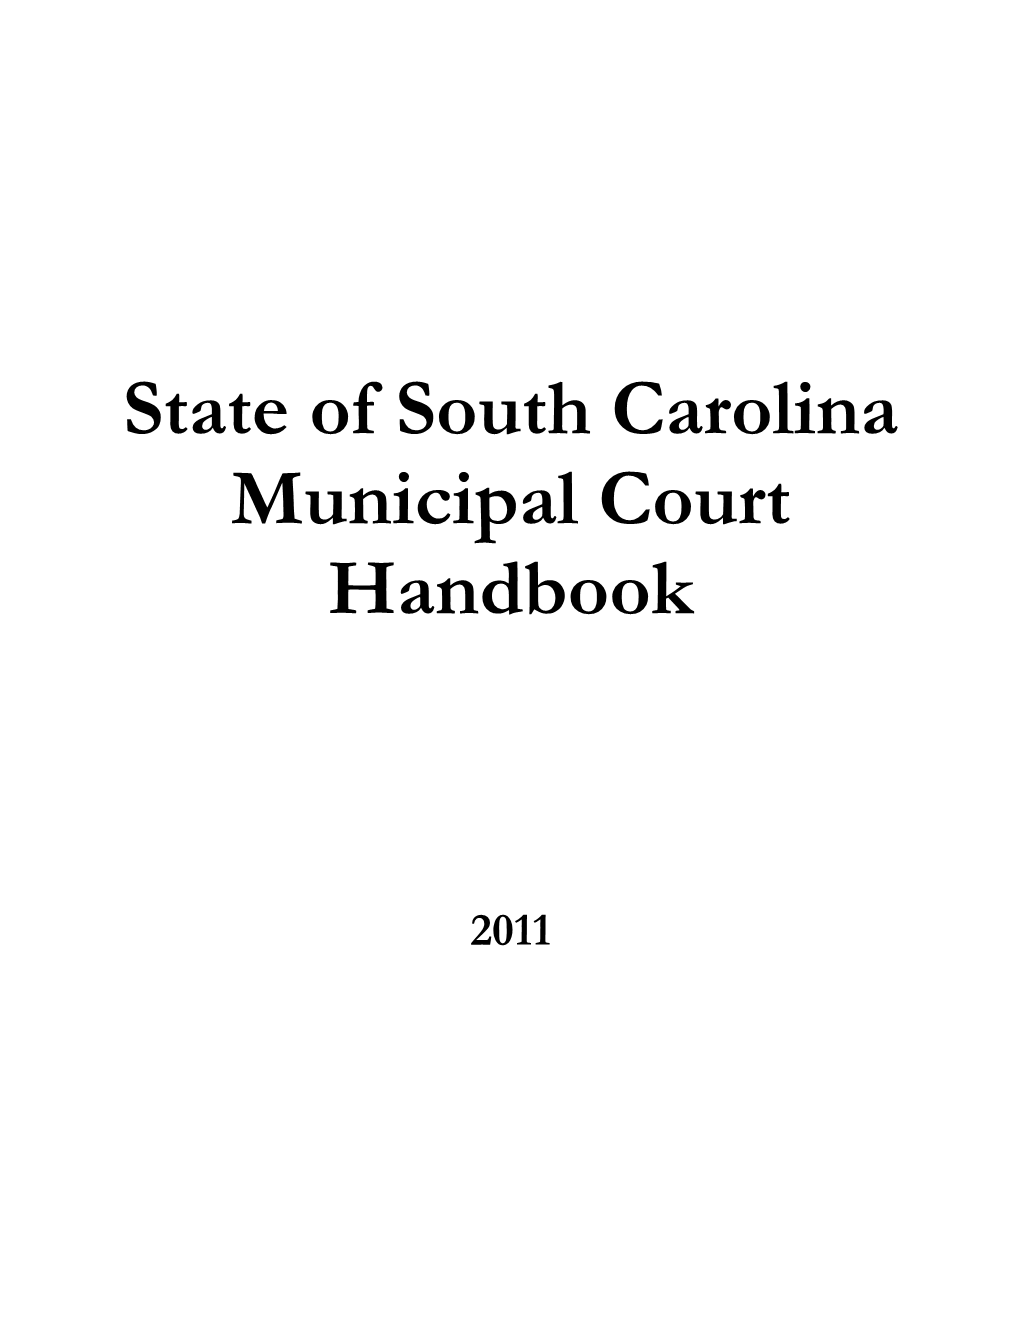 State of South Carolina Municipal Court Handbook